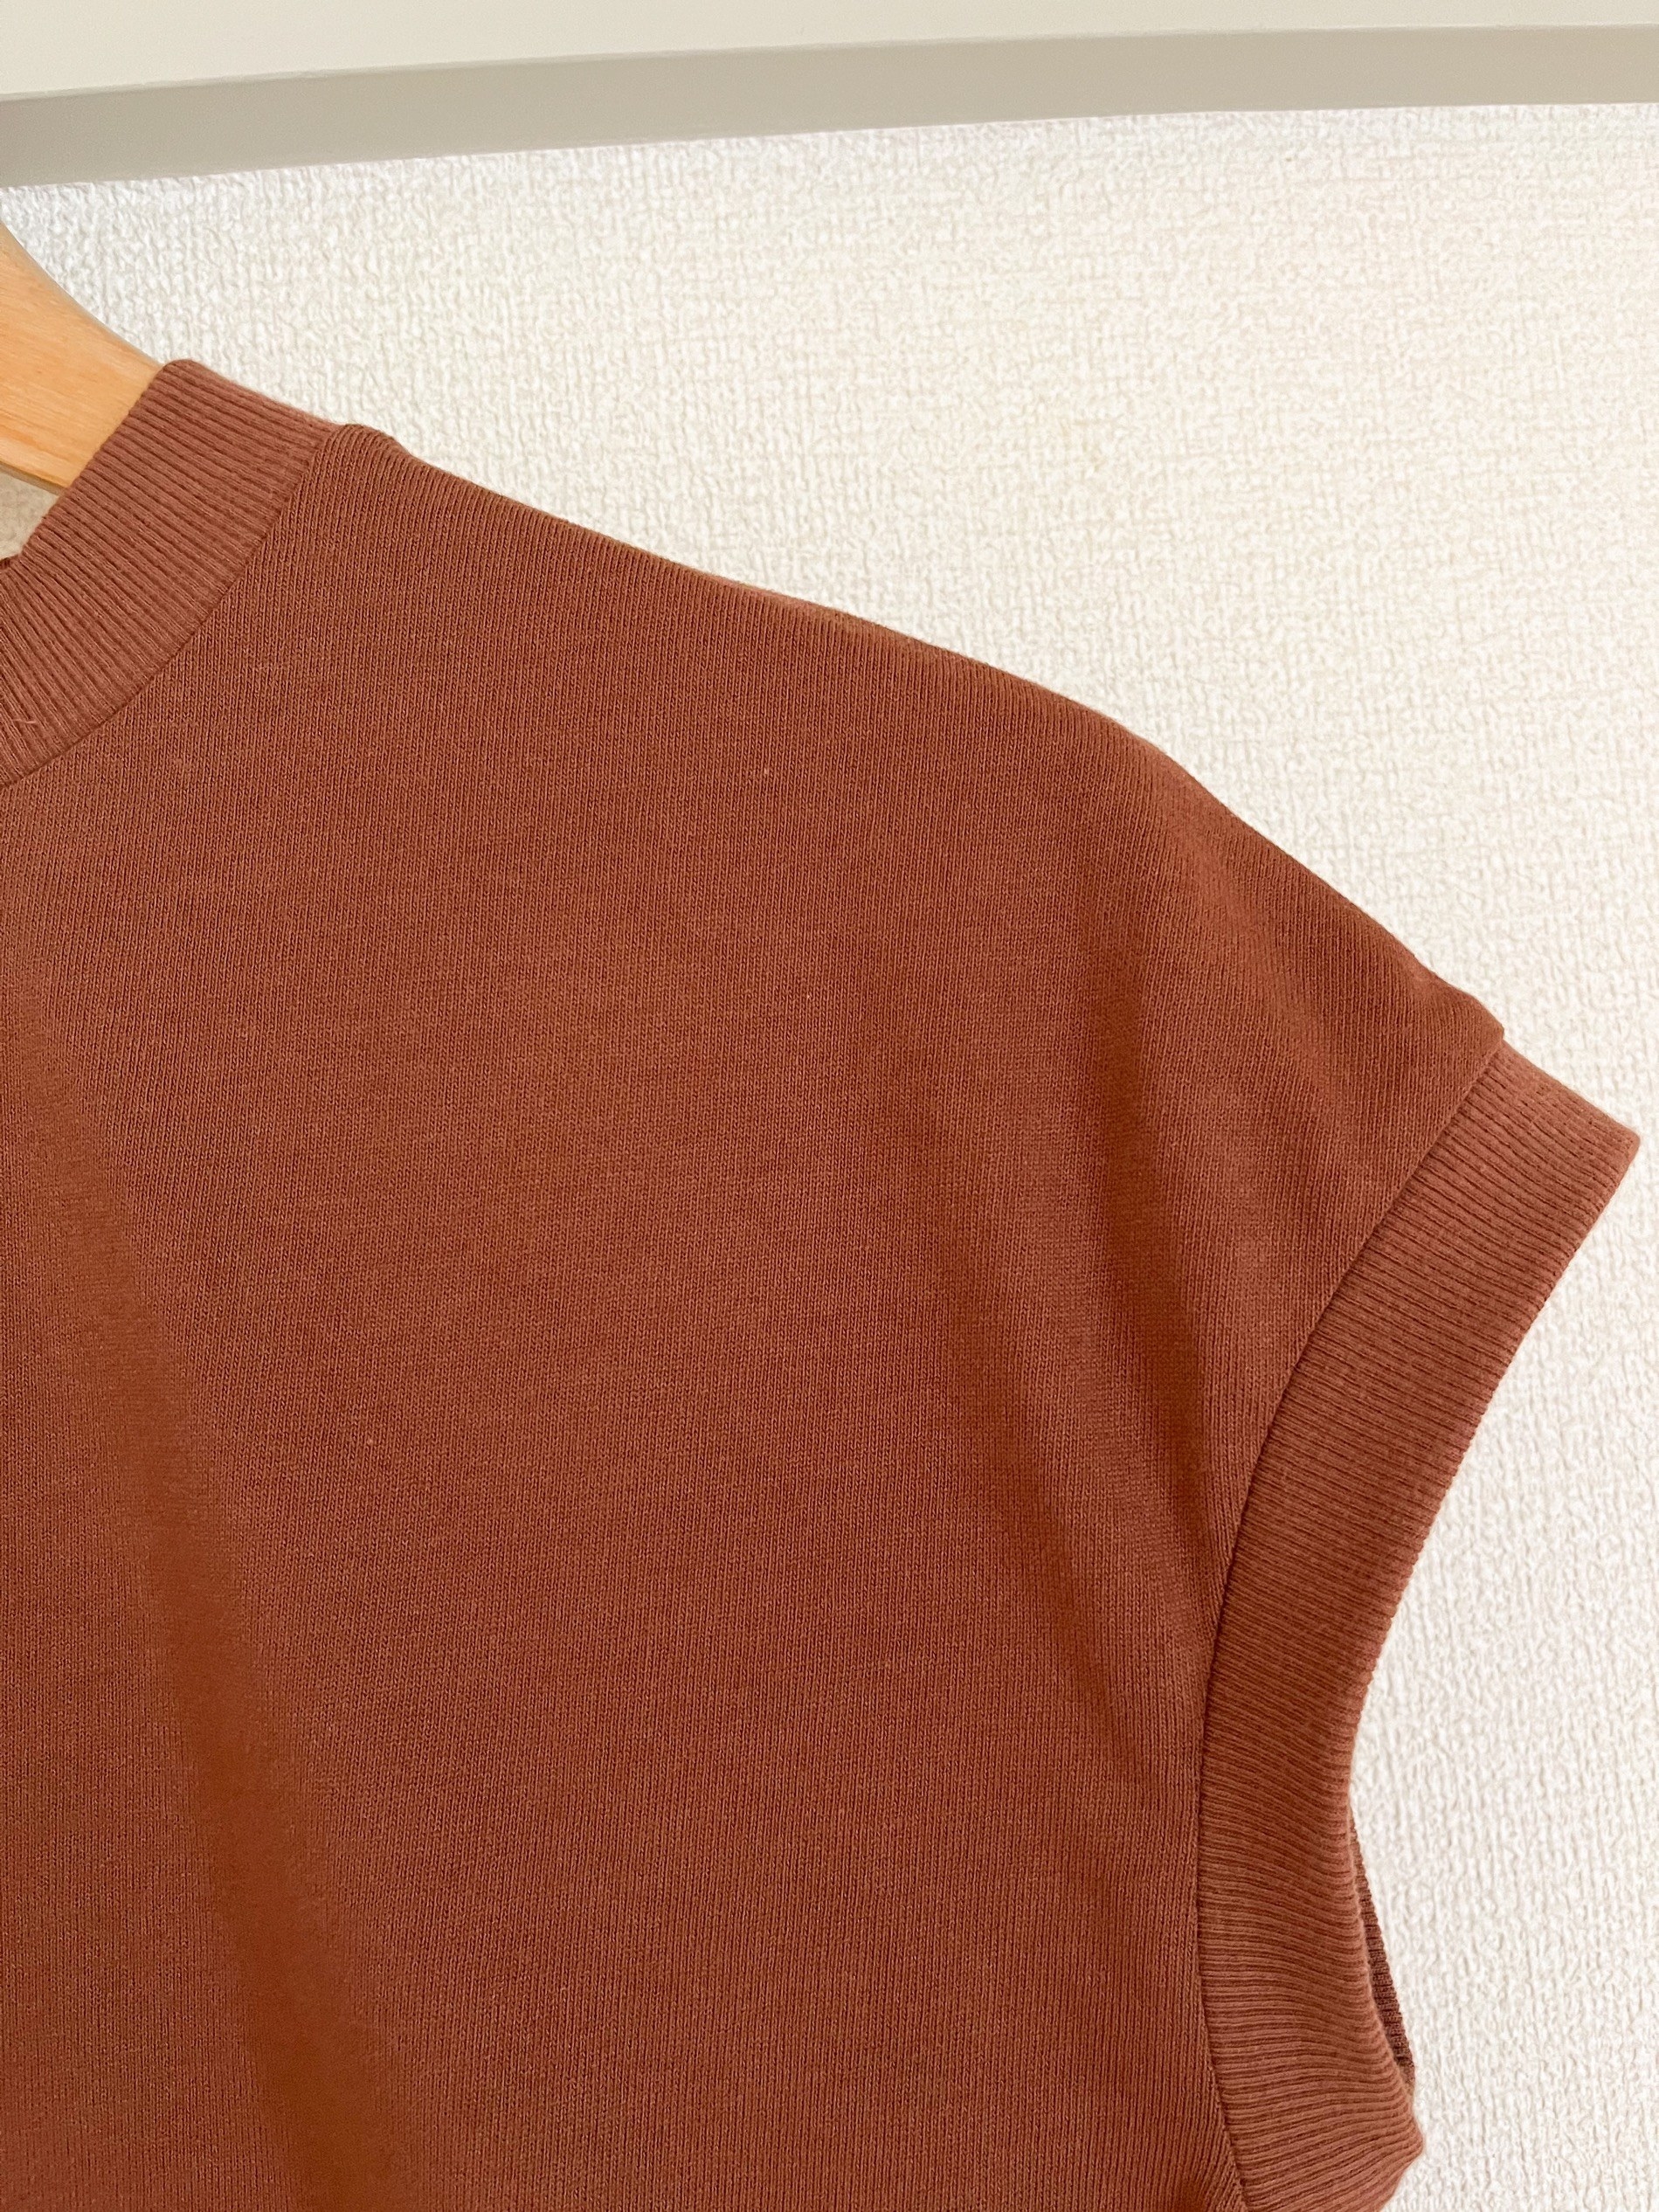 無印良品の人気レディースアイテム「太番手天竺編みフレンチスリーブTシャツ」夏コーデにおすすめ